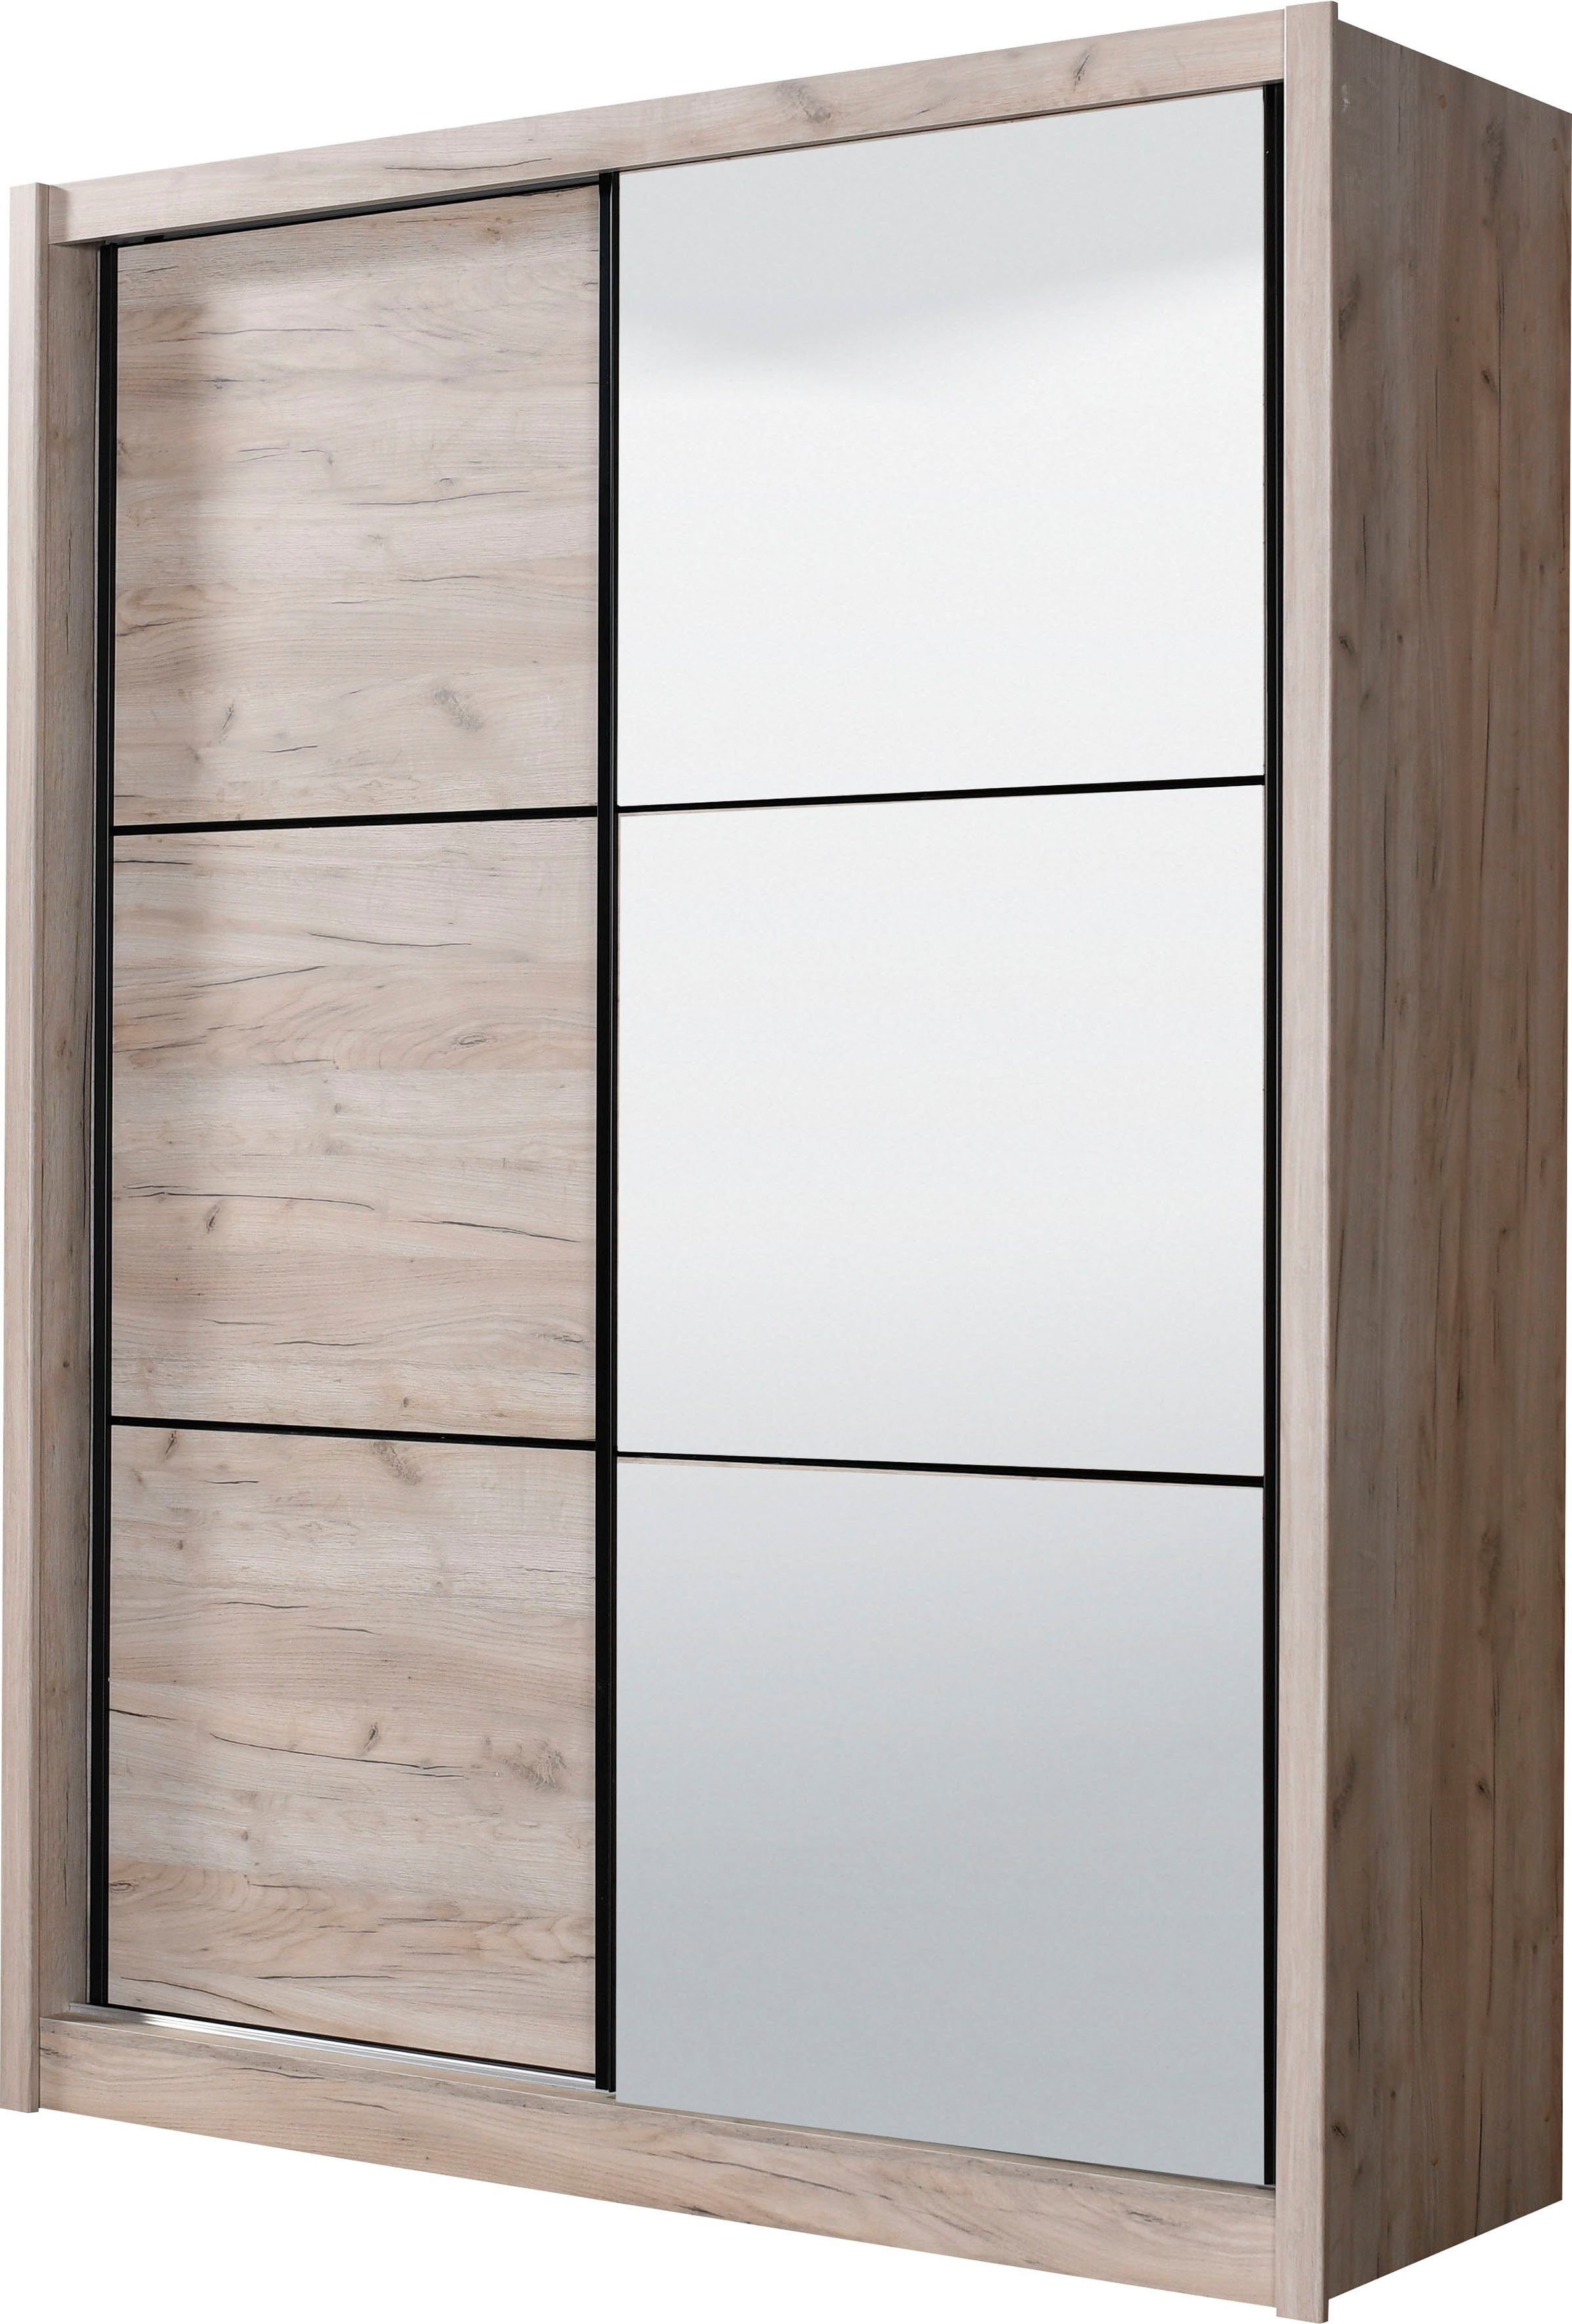 INOSIGN Schwebetürenschrank Eiche | Dekor Eiche und grau Navara grau Spiegel zusätzlichen Dekor mit Einlegeböden